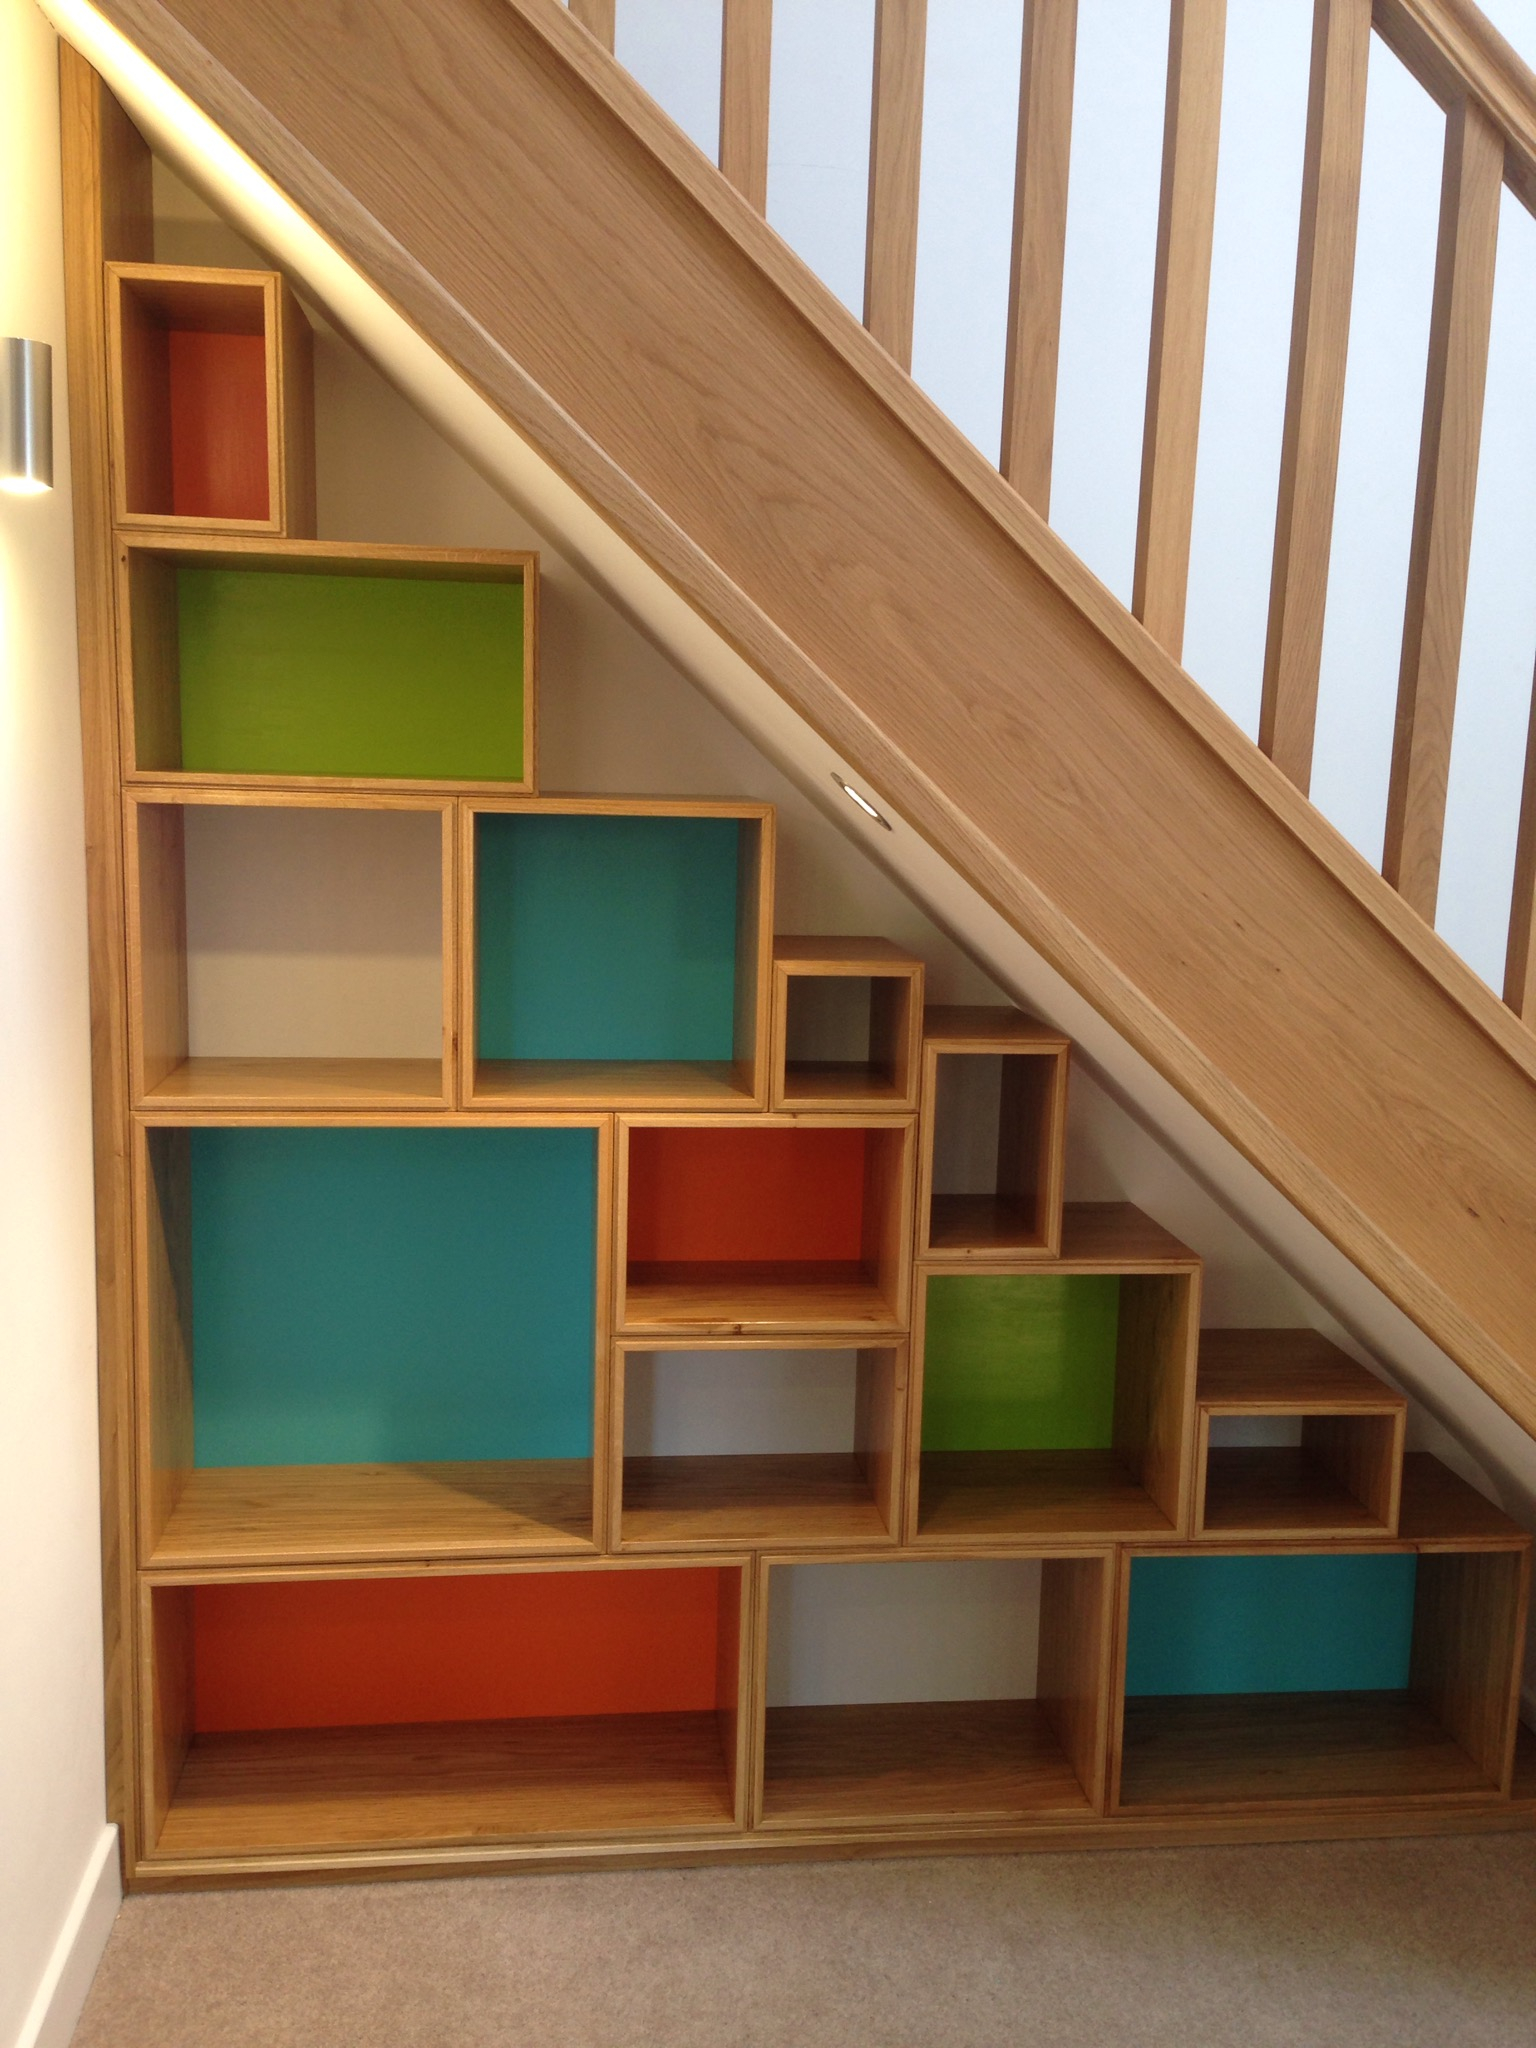 Under Stairs Storage Ideas, Storage Solutions